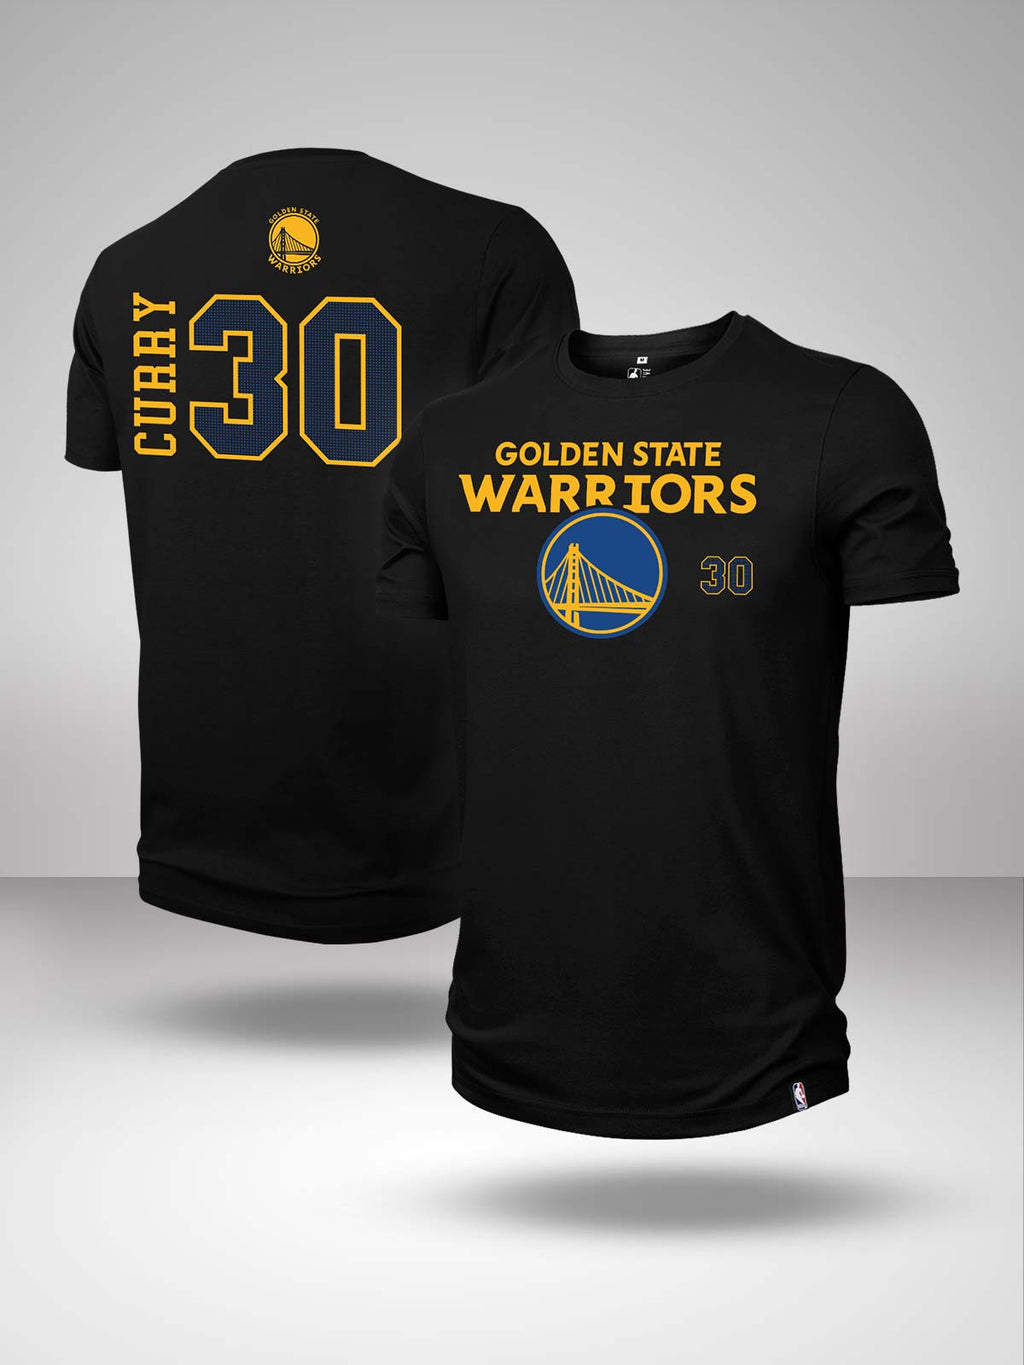 Steph Curry Golden State Warriors NBA Women's T-Shirt